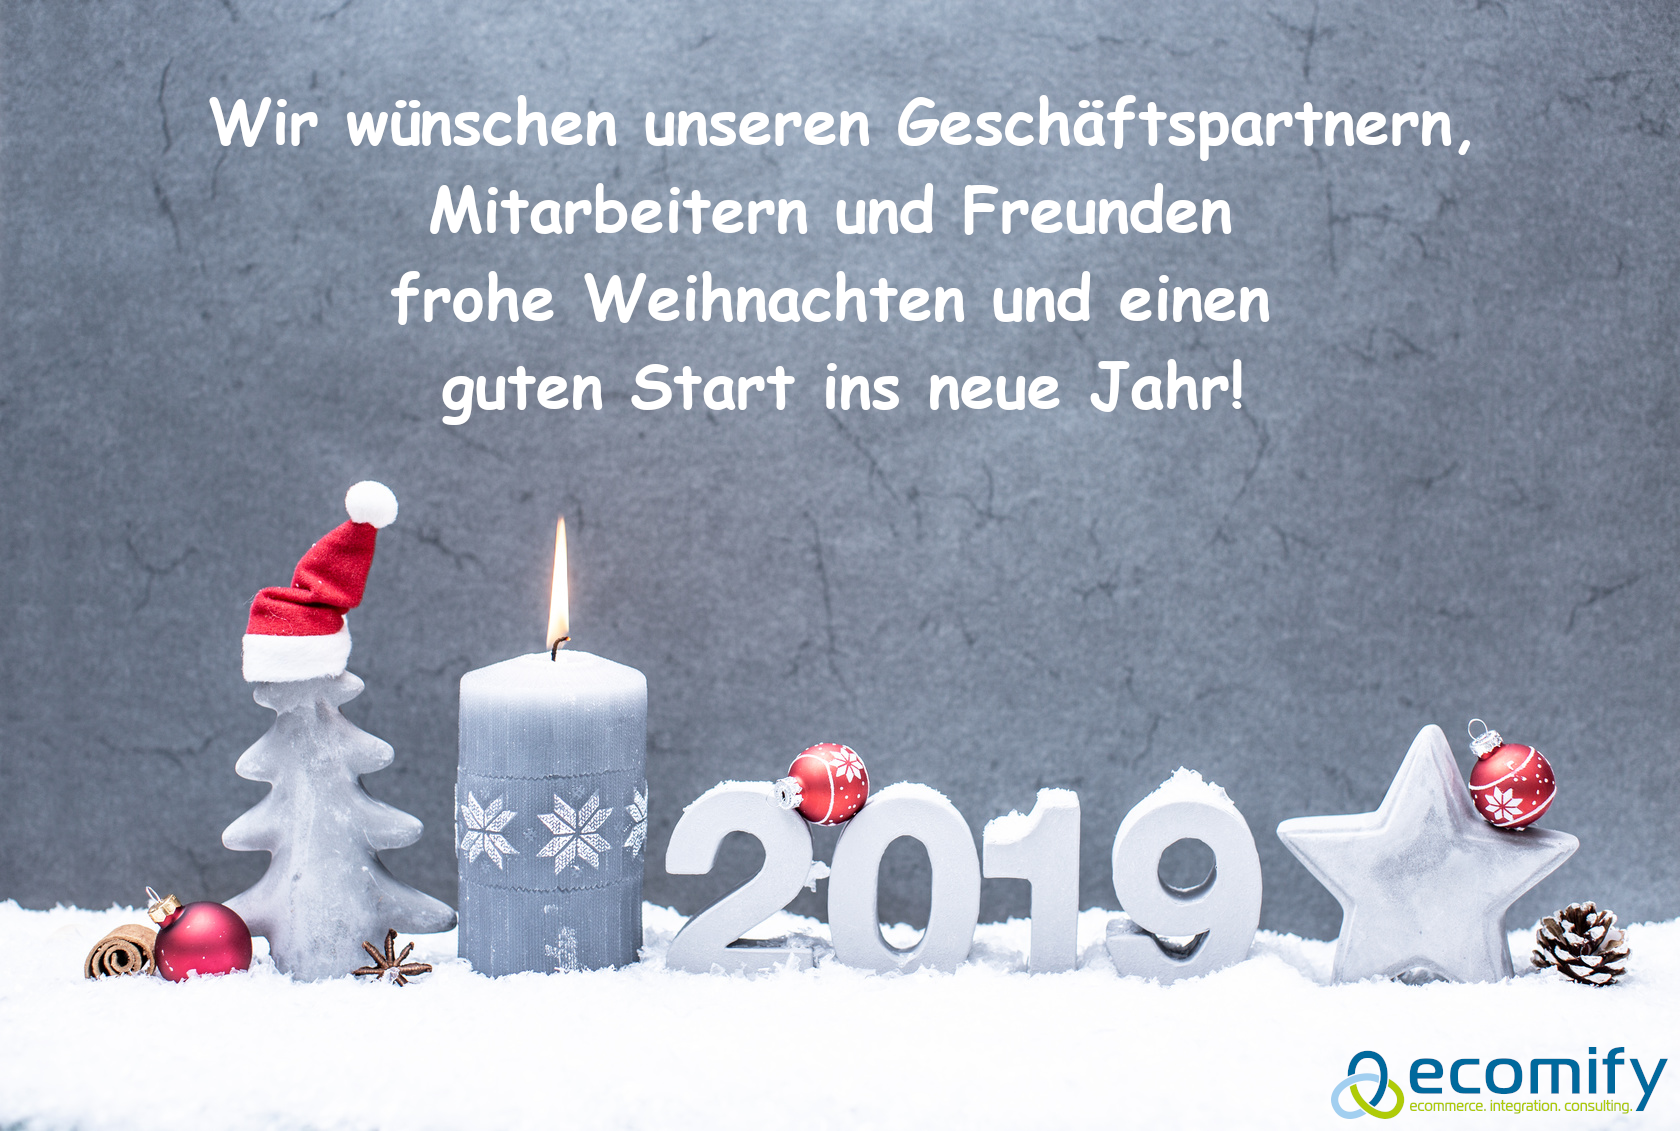 Wir wünschen unseren Geschäftspartnern, Mitarbeitern und Freunden frohe Weihnachten und einen guten Start ins neue Jahr!